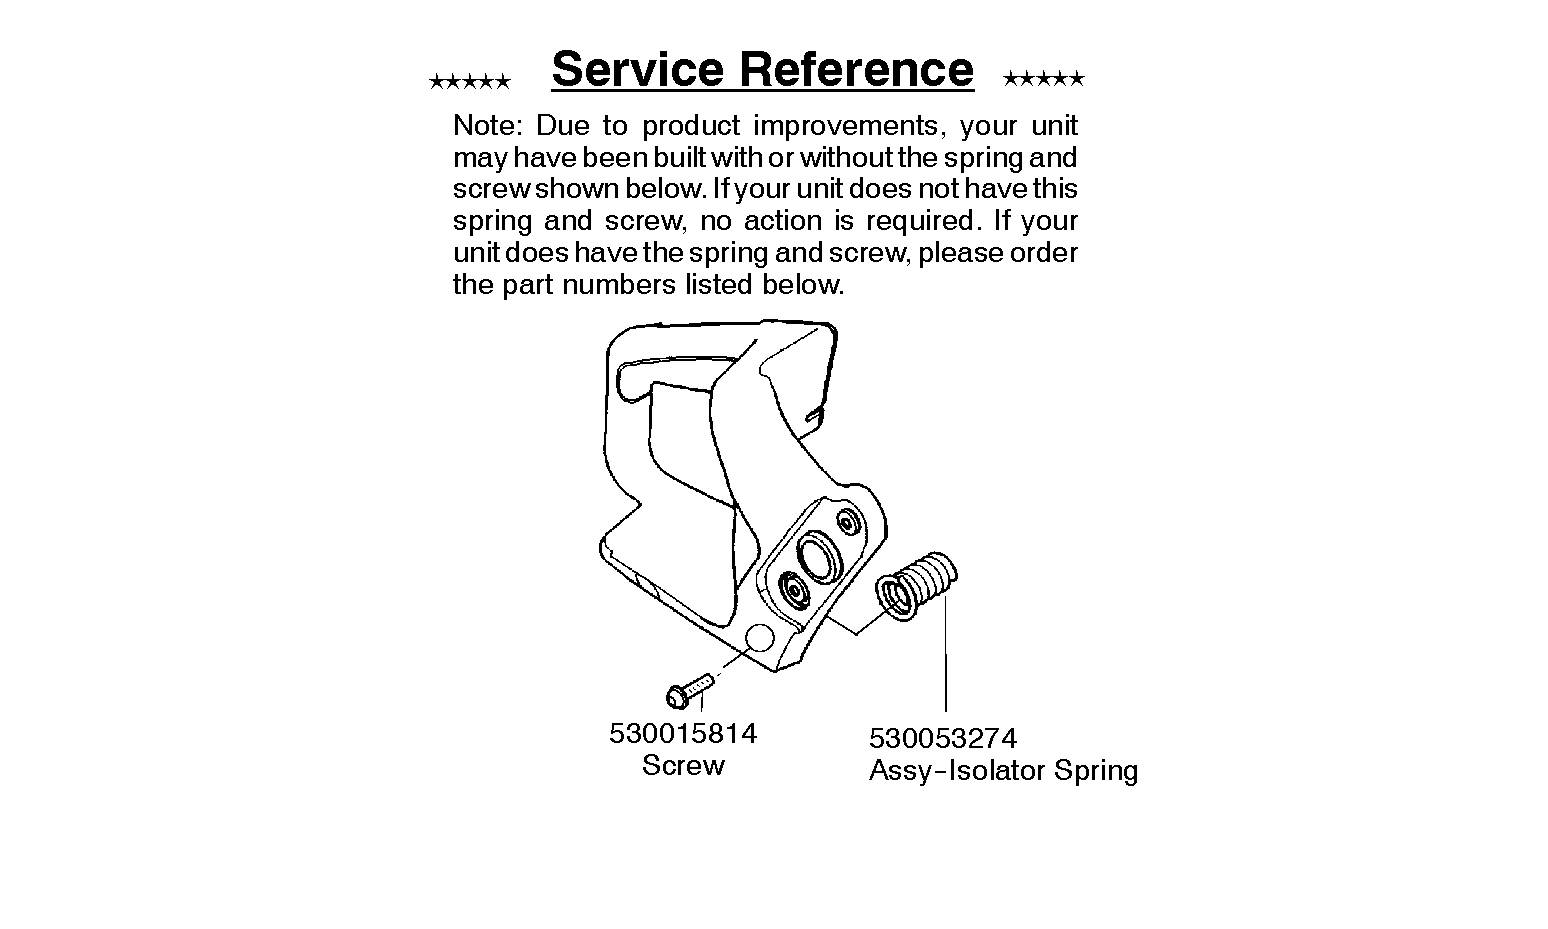 Service updates 530015814, 545006036